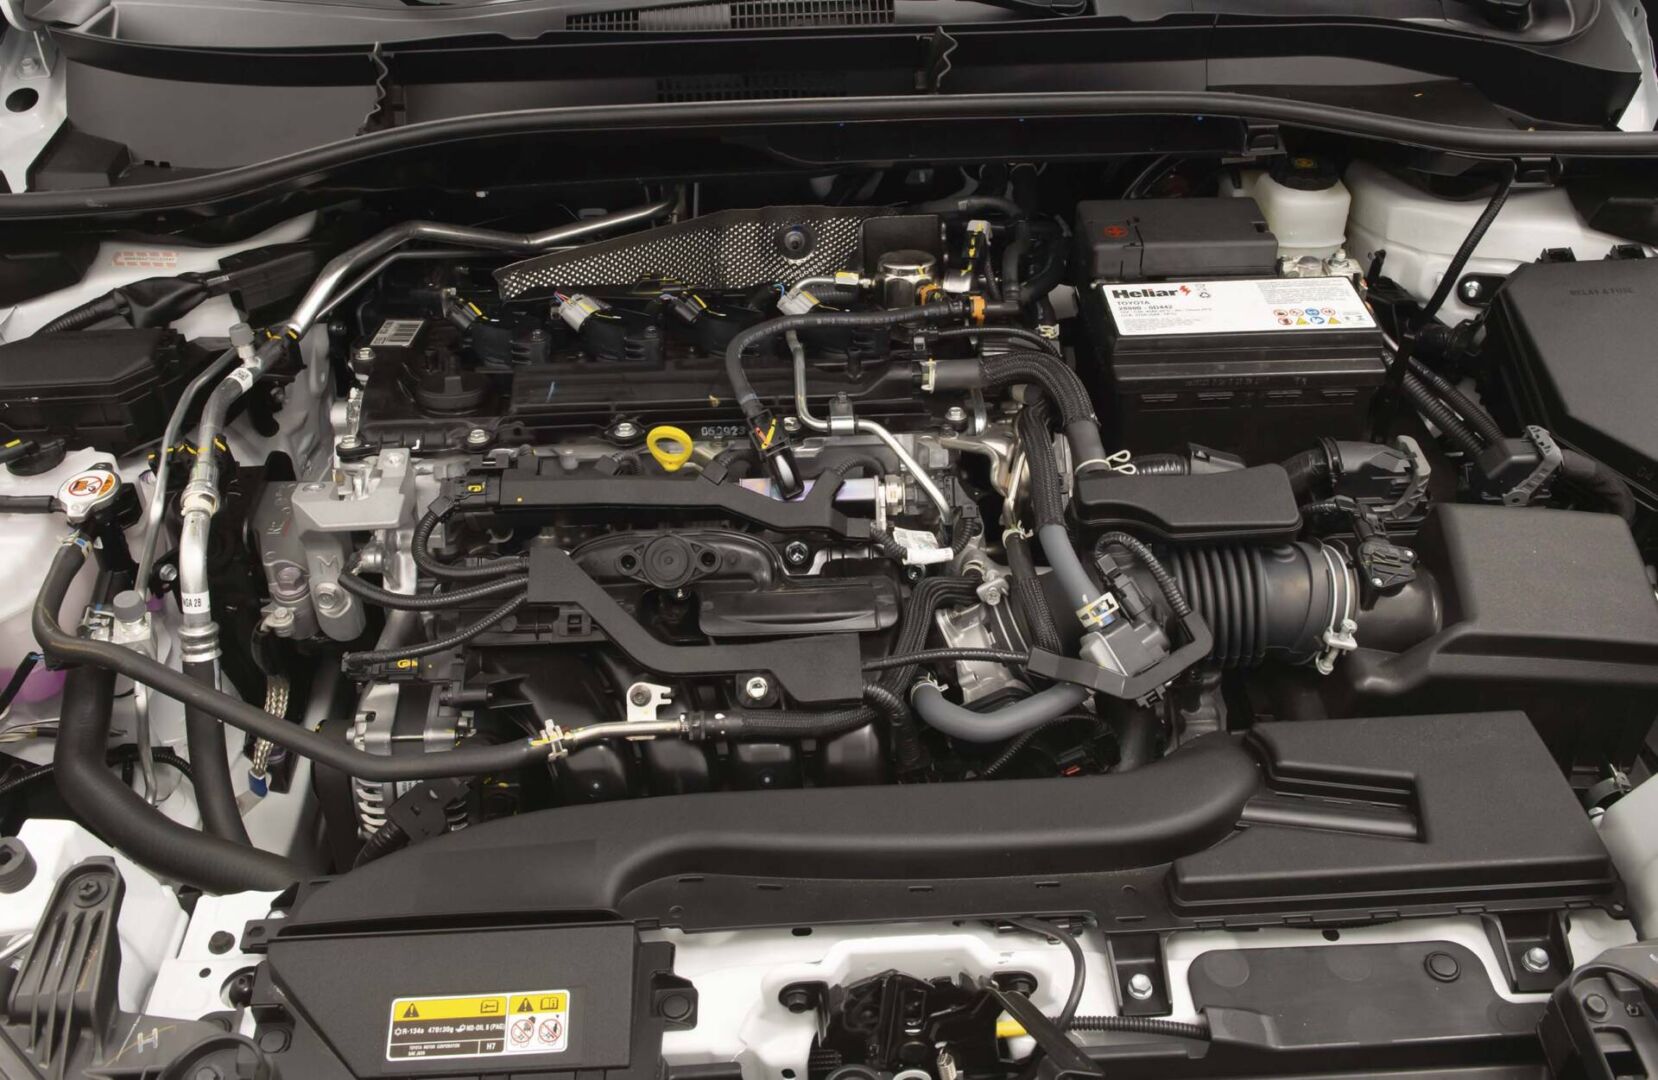 El Toyota Corolla Cros, el vehículo más vendido del país, recibe una importante actualización. ¿Qué podemos esperar de esta renovación? Estos son los aspectos más relevantes. V12MAGAZINE